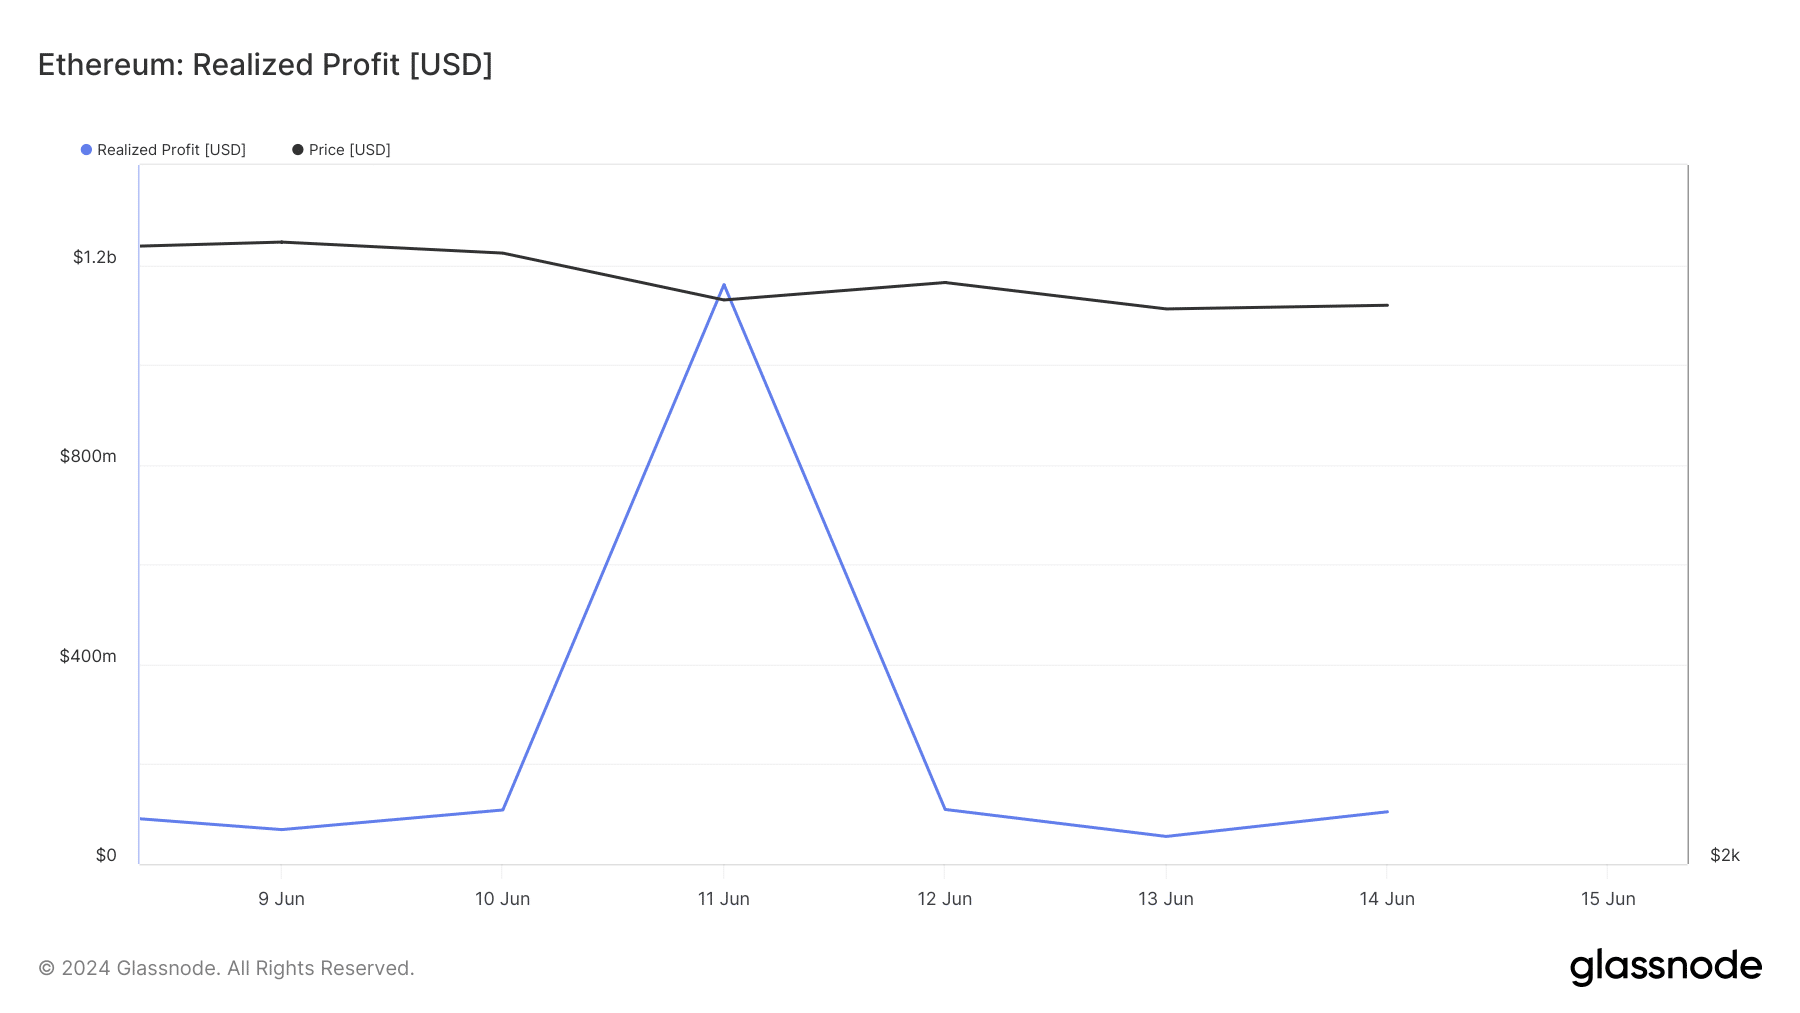 Ethereum realized profits increase 